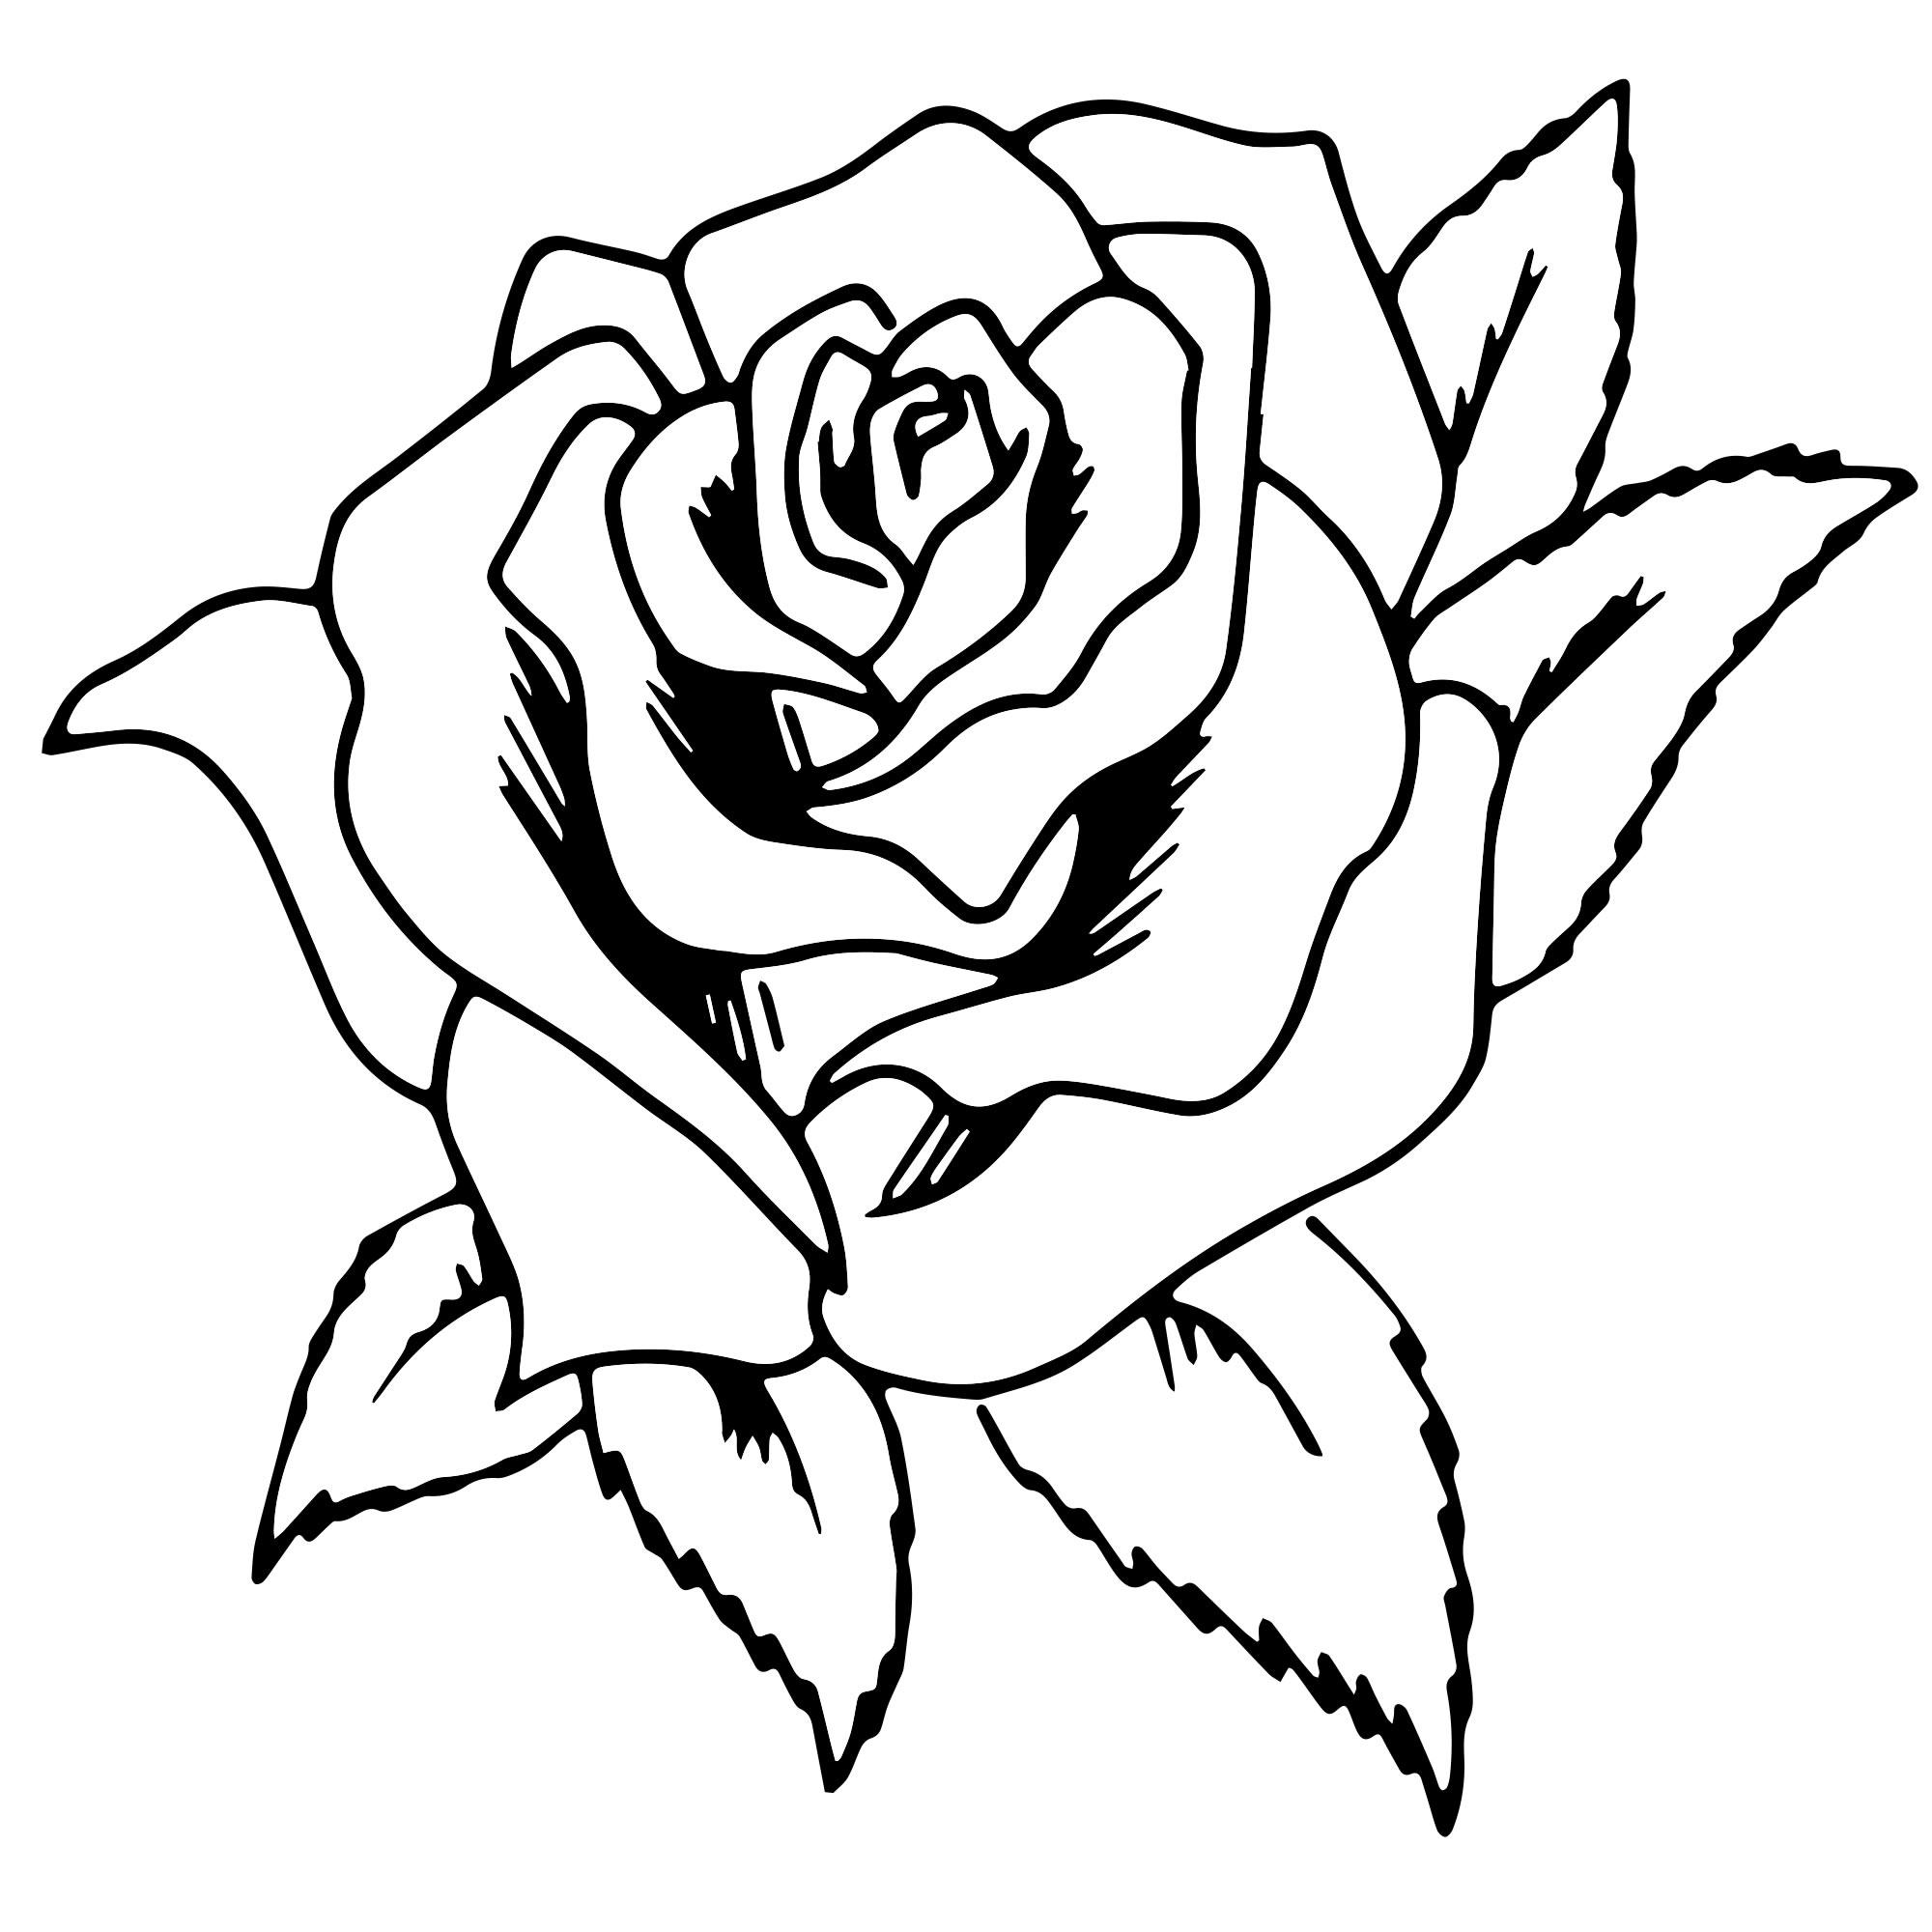 Раскраска розы с цветным контуром